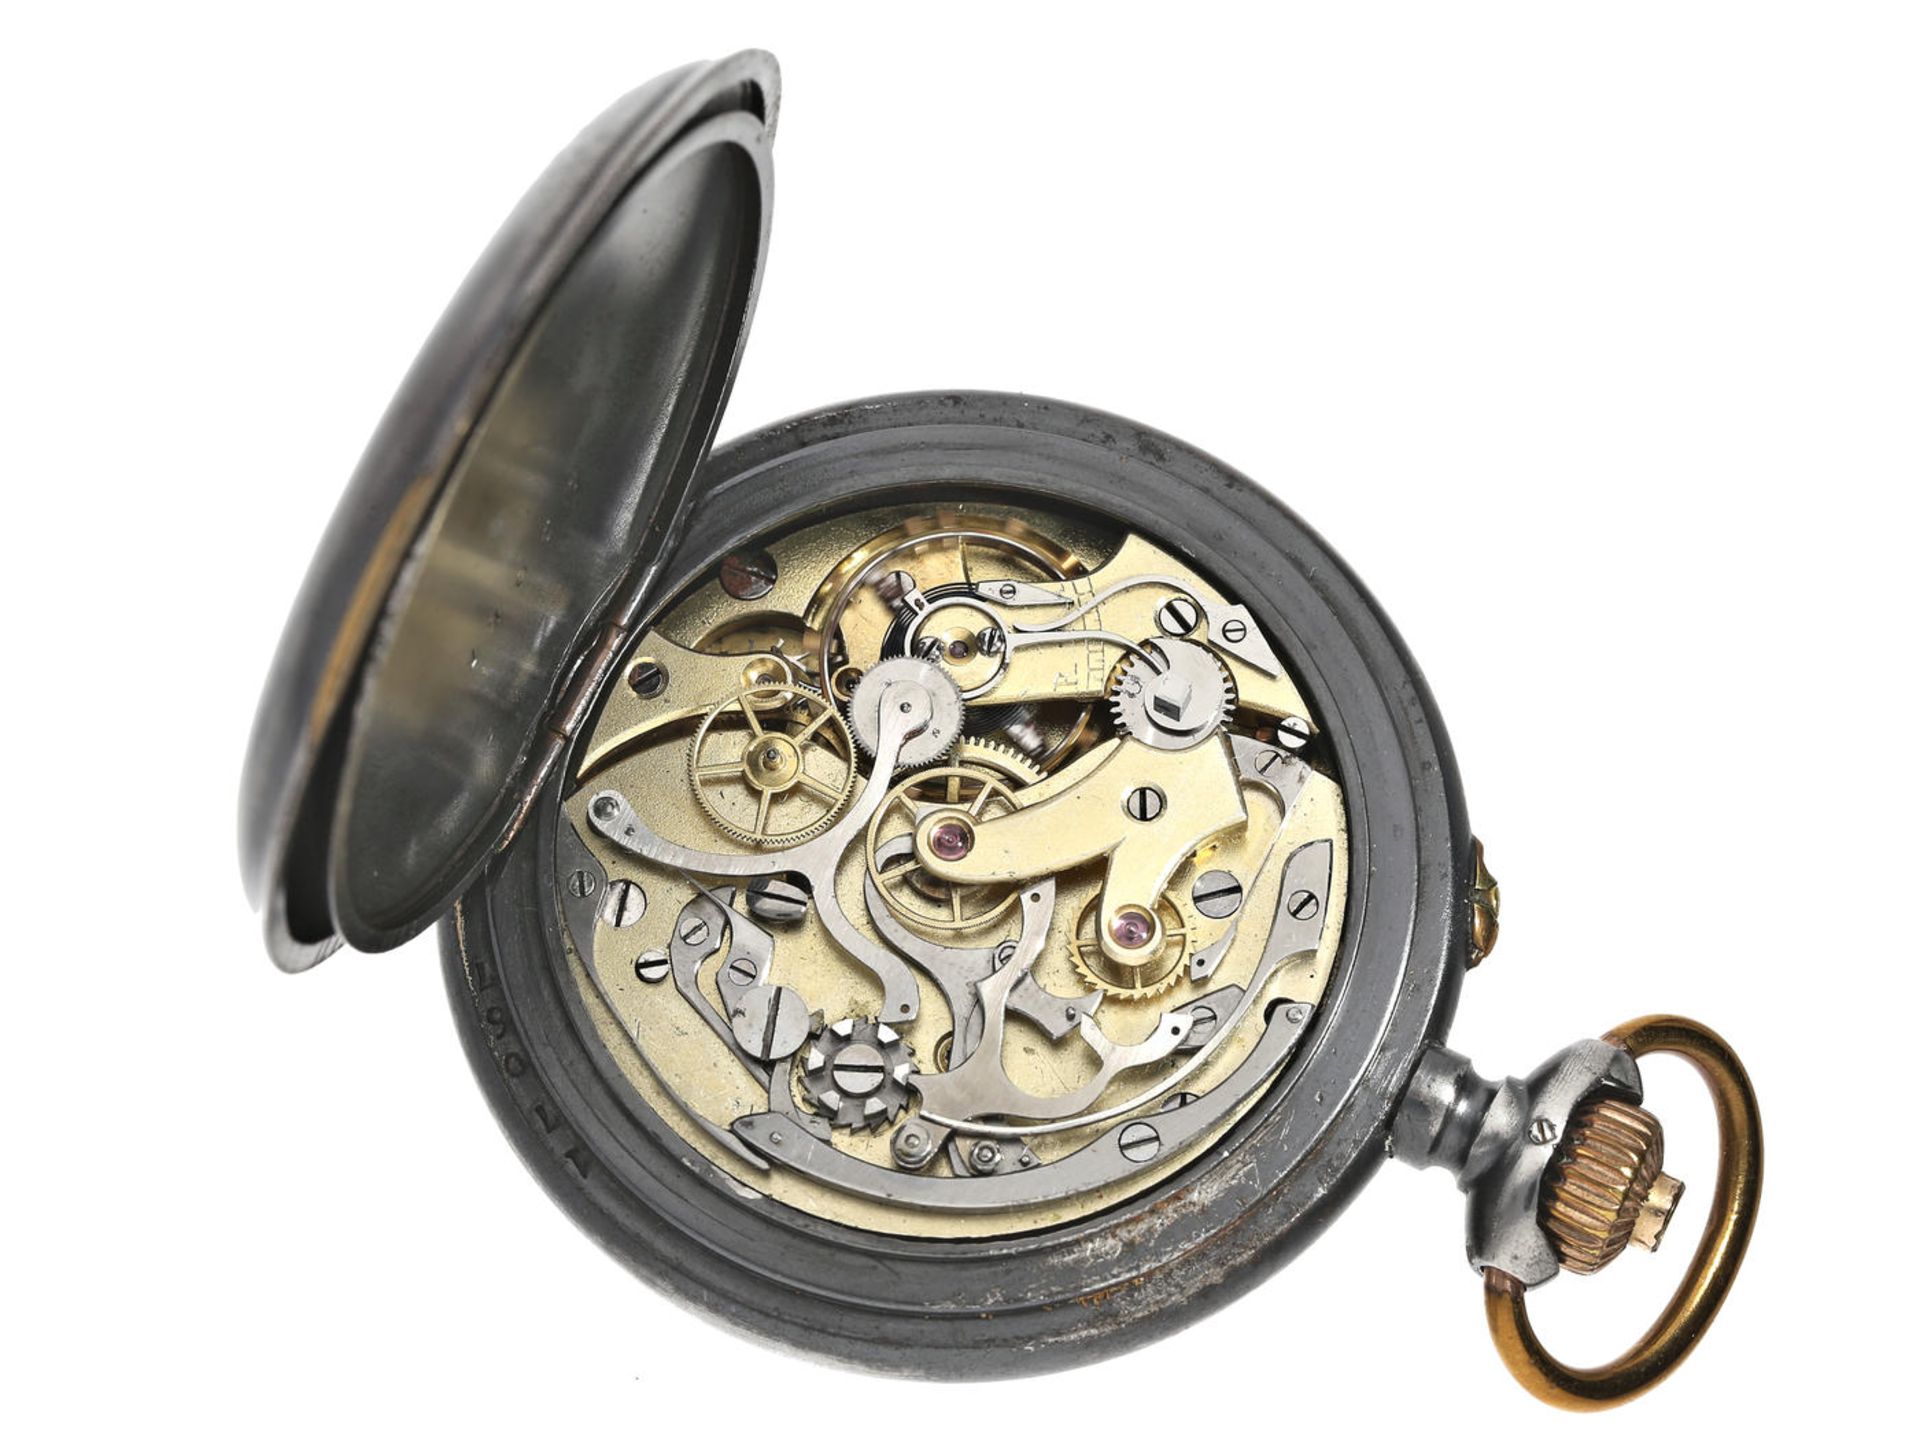 Taschenuhr: interessanter, seltener Schweizer Chronograph "Compteur" mit seltenem Präzisionskaliber, - Bild 3 aus 5